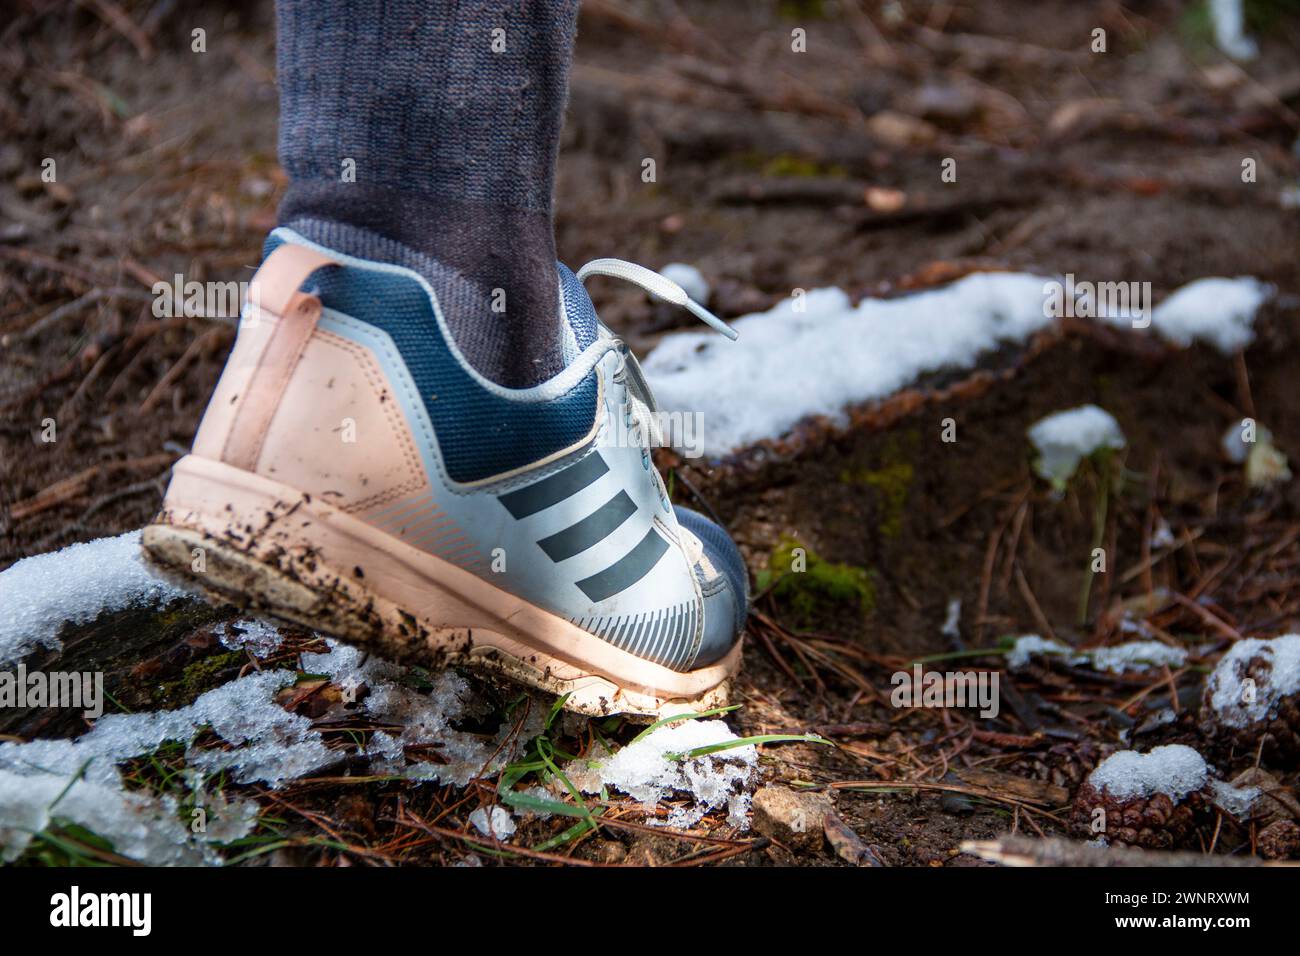 Femme marchant le long des sentiers de montagne enneigés avec des chaussures Adidas Terrex pour une utilisation de trekking Banque D'Images